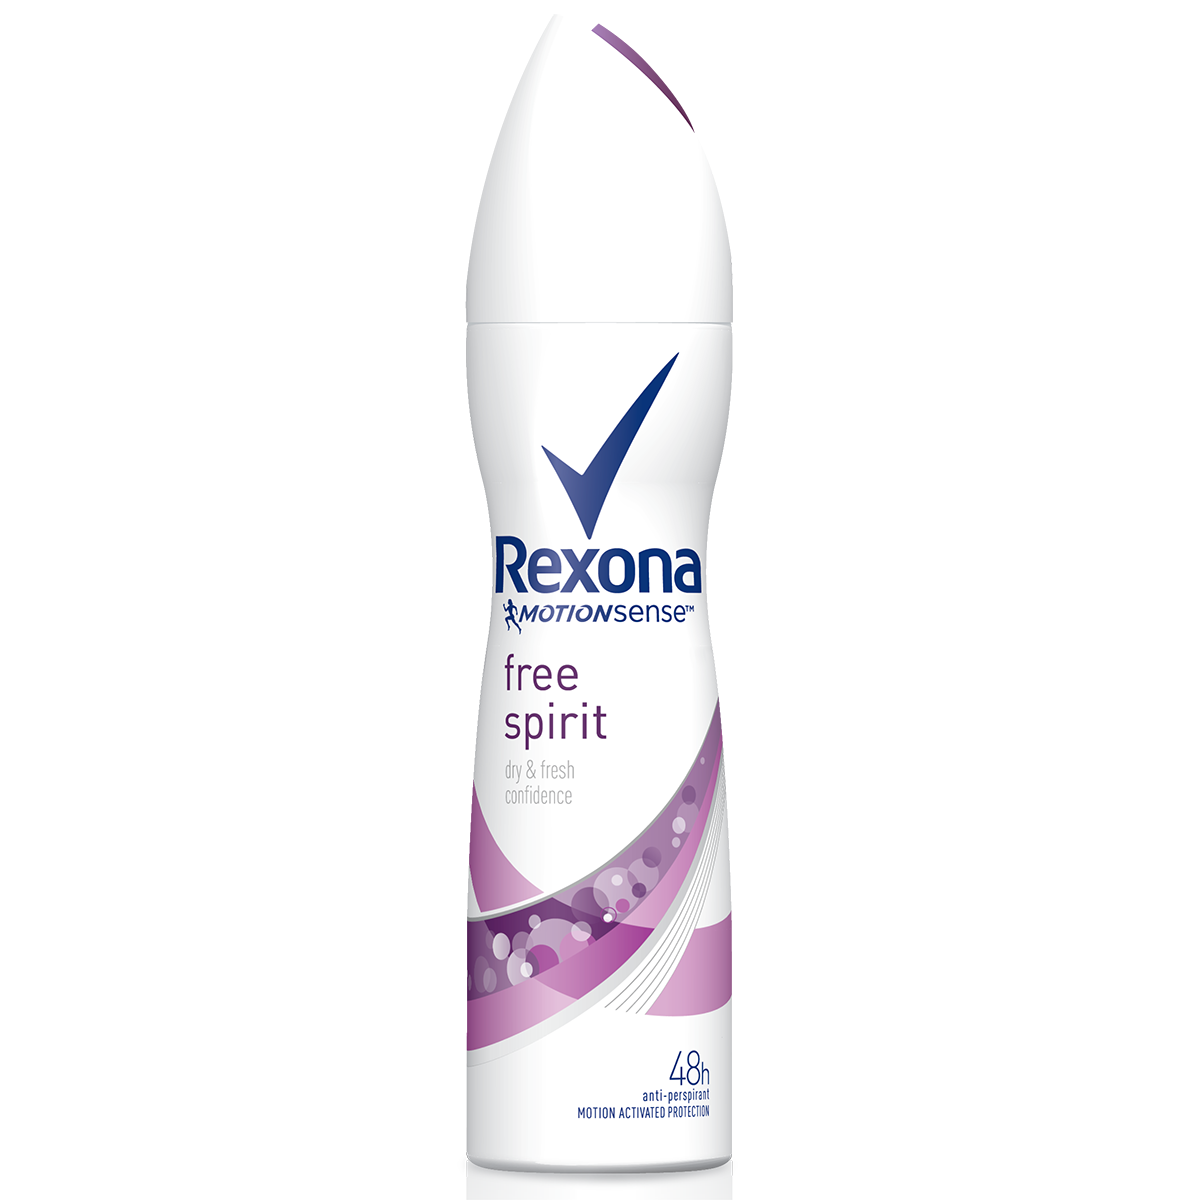 Xịt khử mùi Rexona Free Spirit khô thoáng tối ưu hương thảo mộc thư giãn dành cho nữ, 150ml